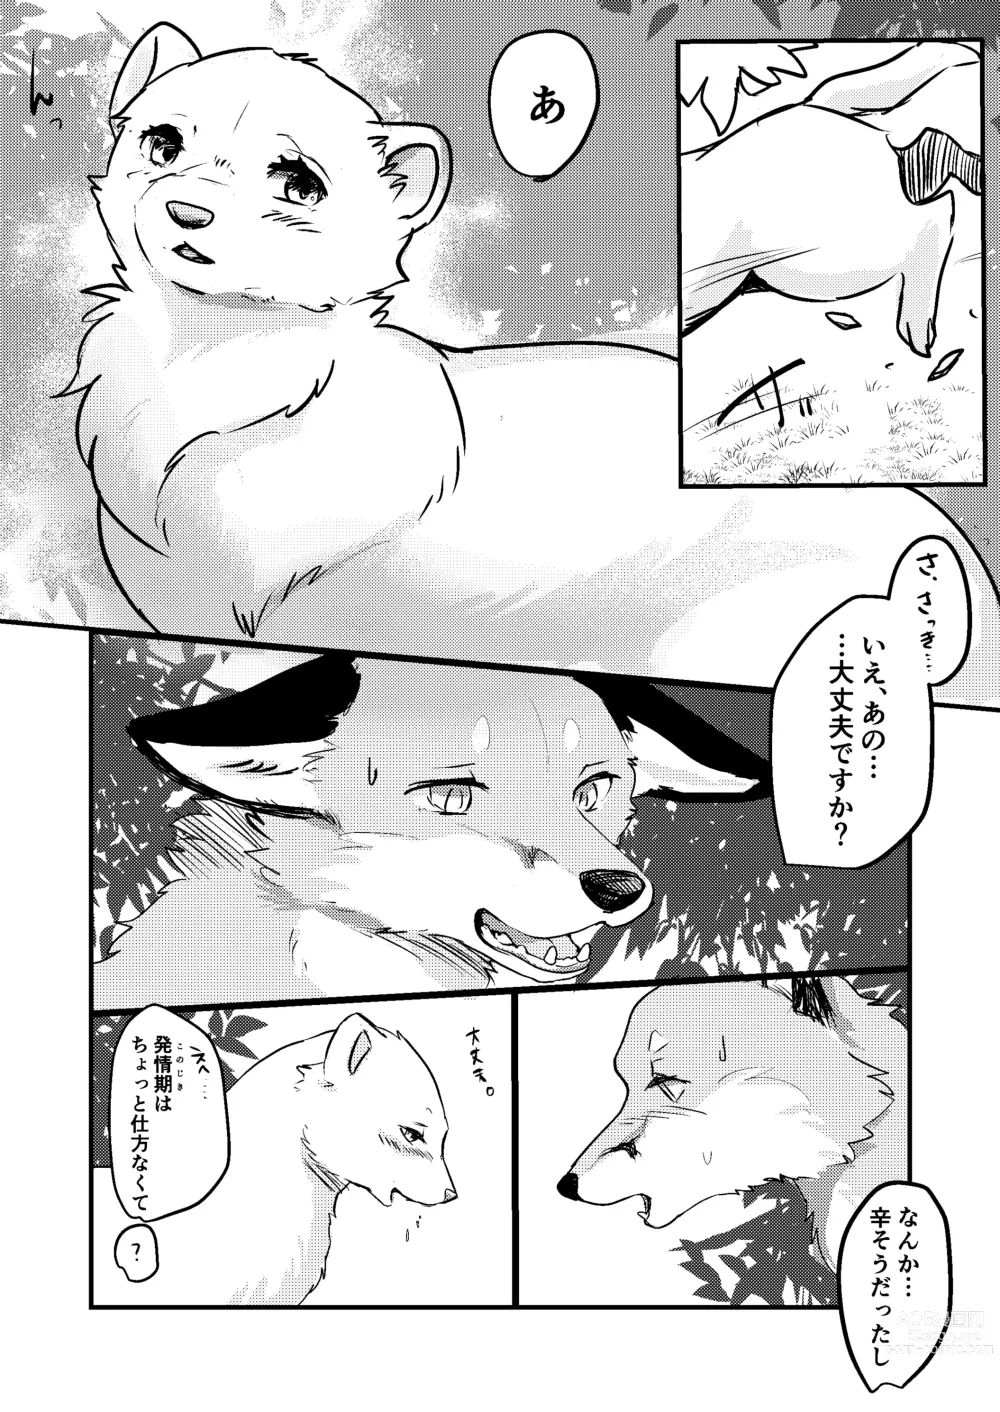 Page 5 of doujinshi Haru no nioi ni sasowarete (uncensored)